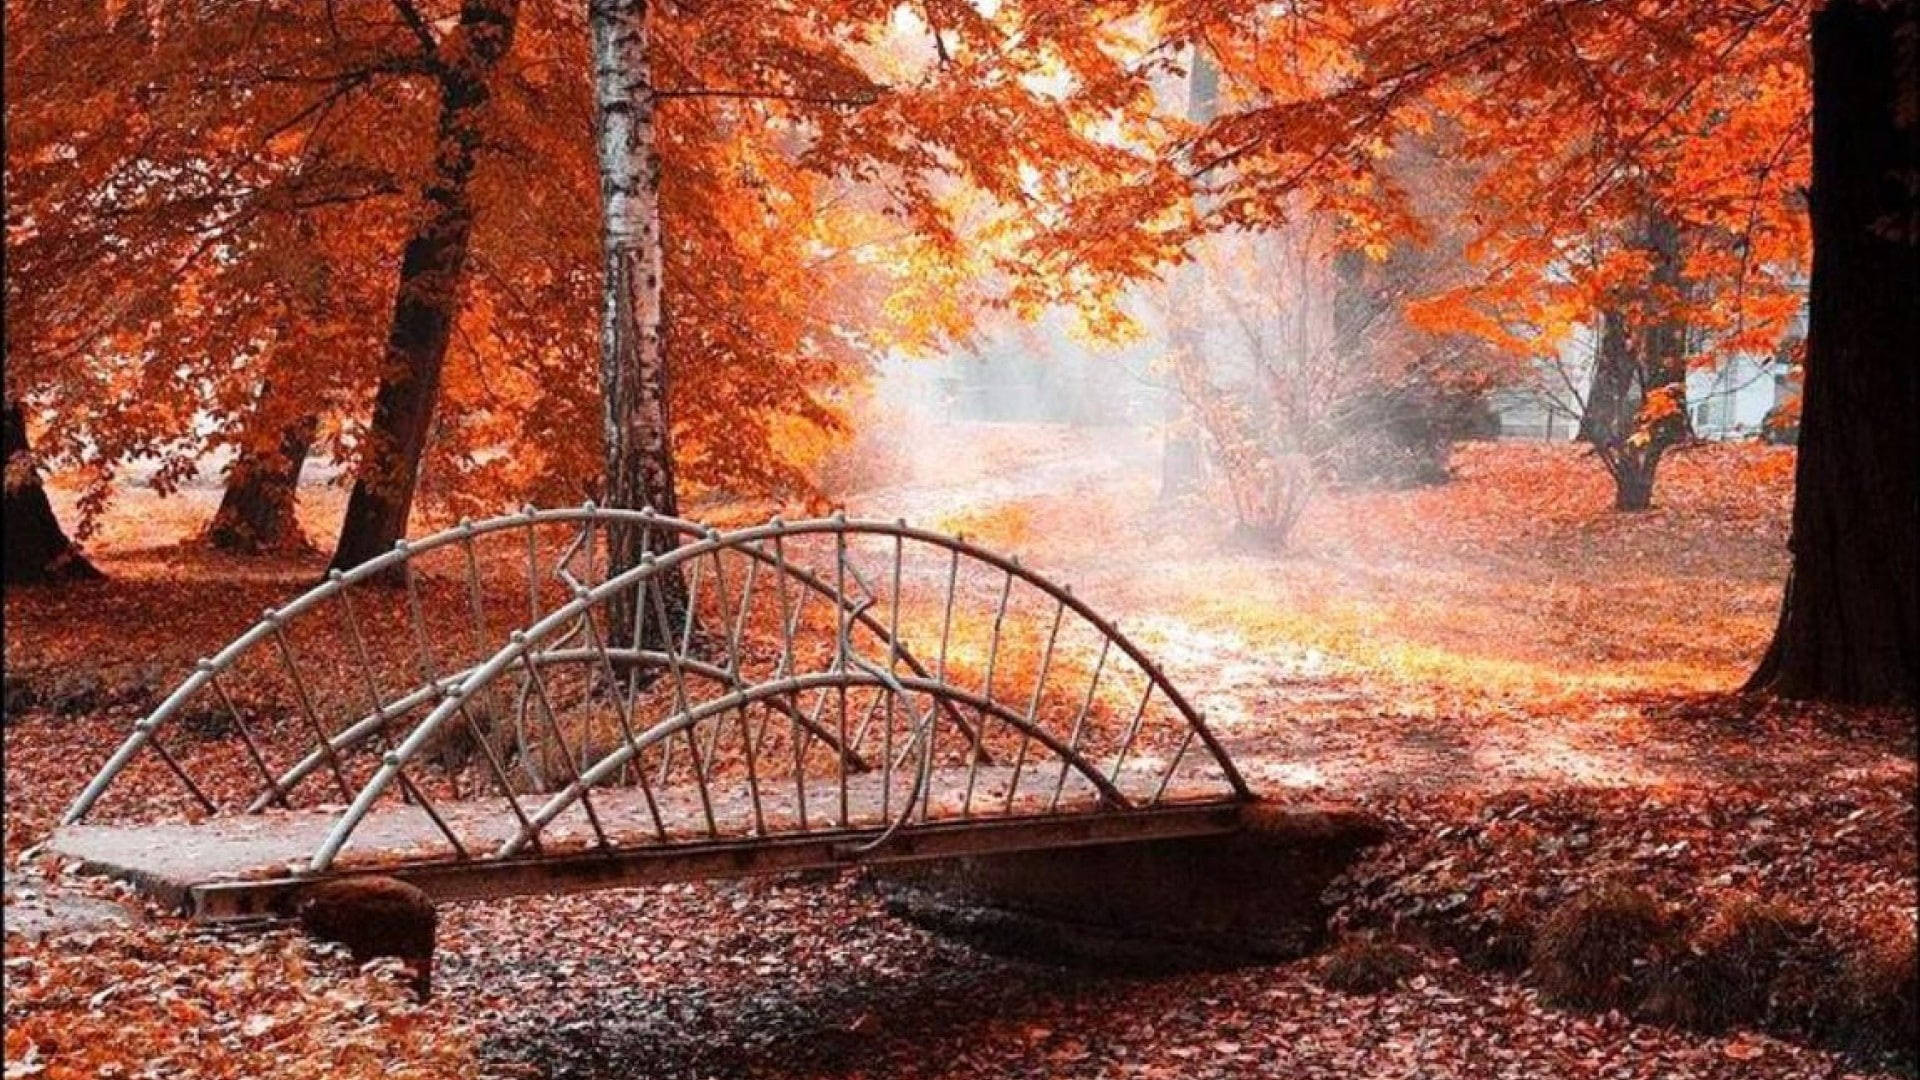 1920x1080 4k Bridge In Autumn Forest Background